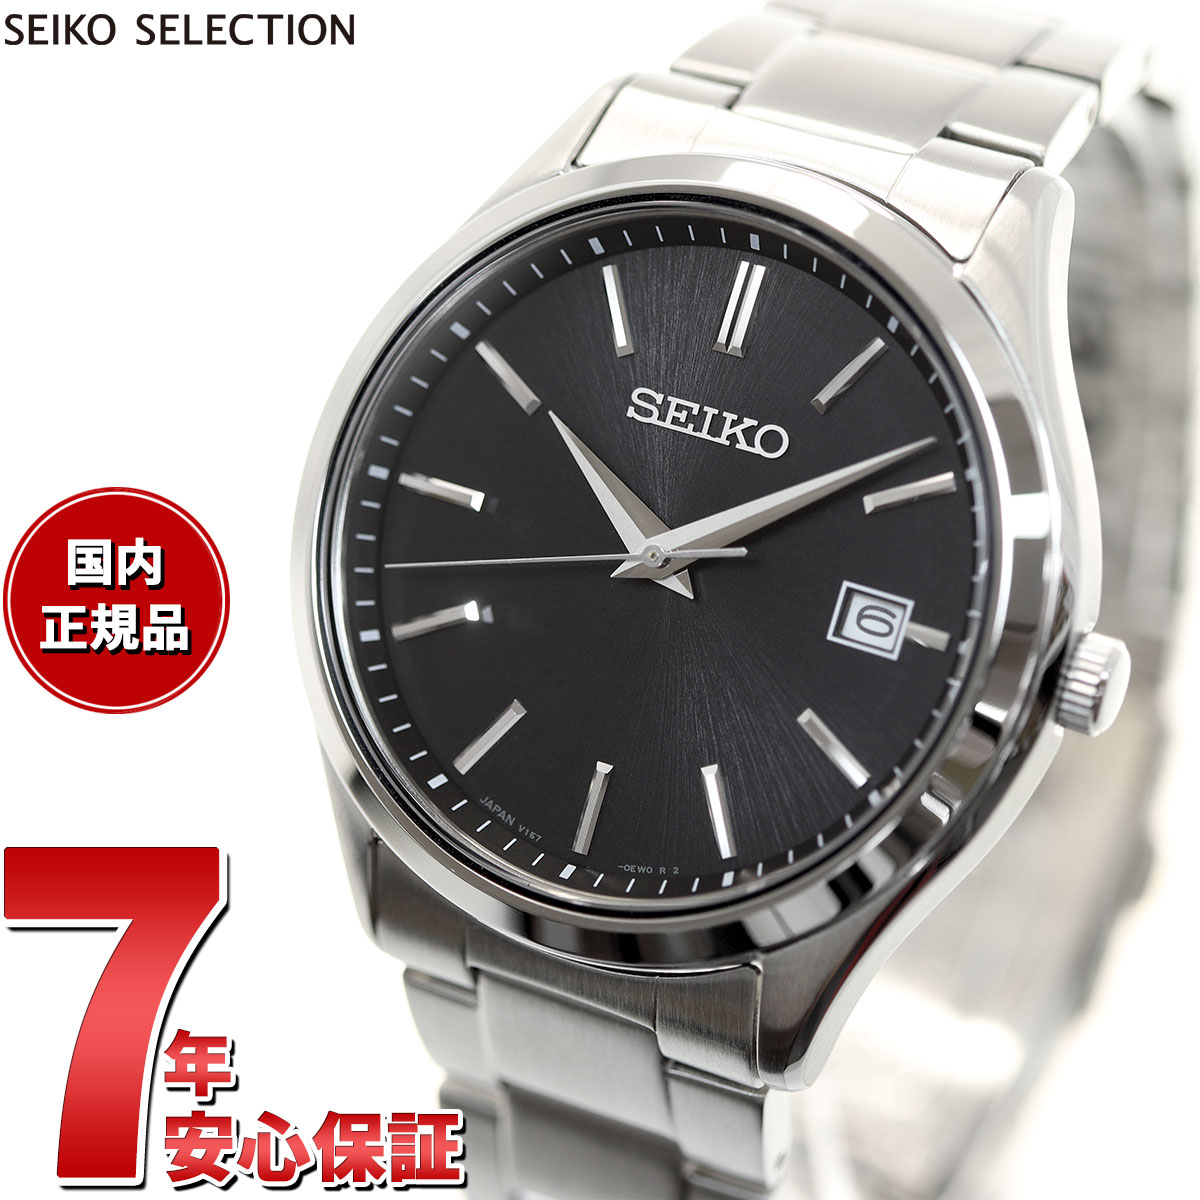 2021人気の セイコー セレクション SEIKO SELECTION Sシリーズ